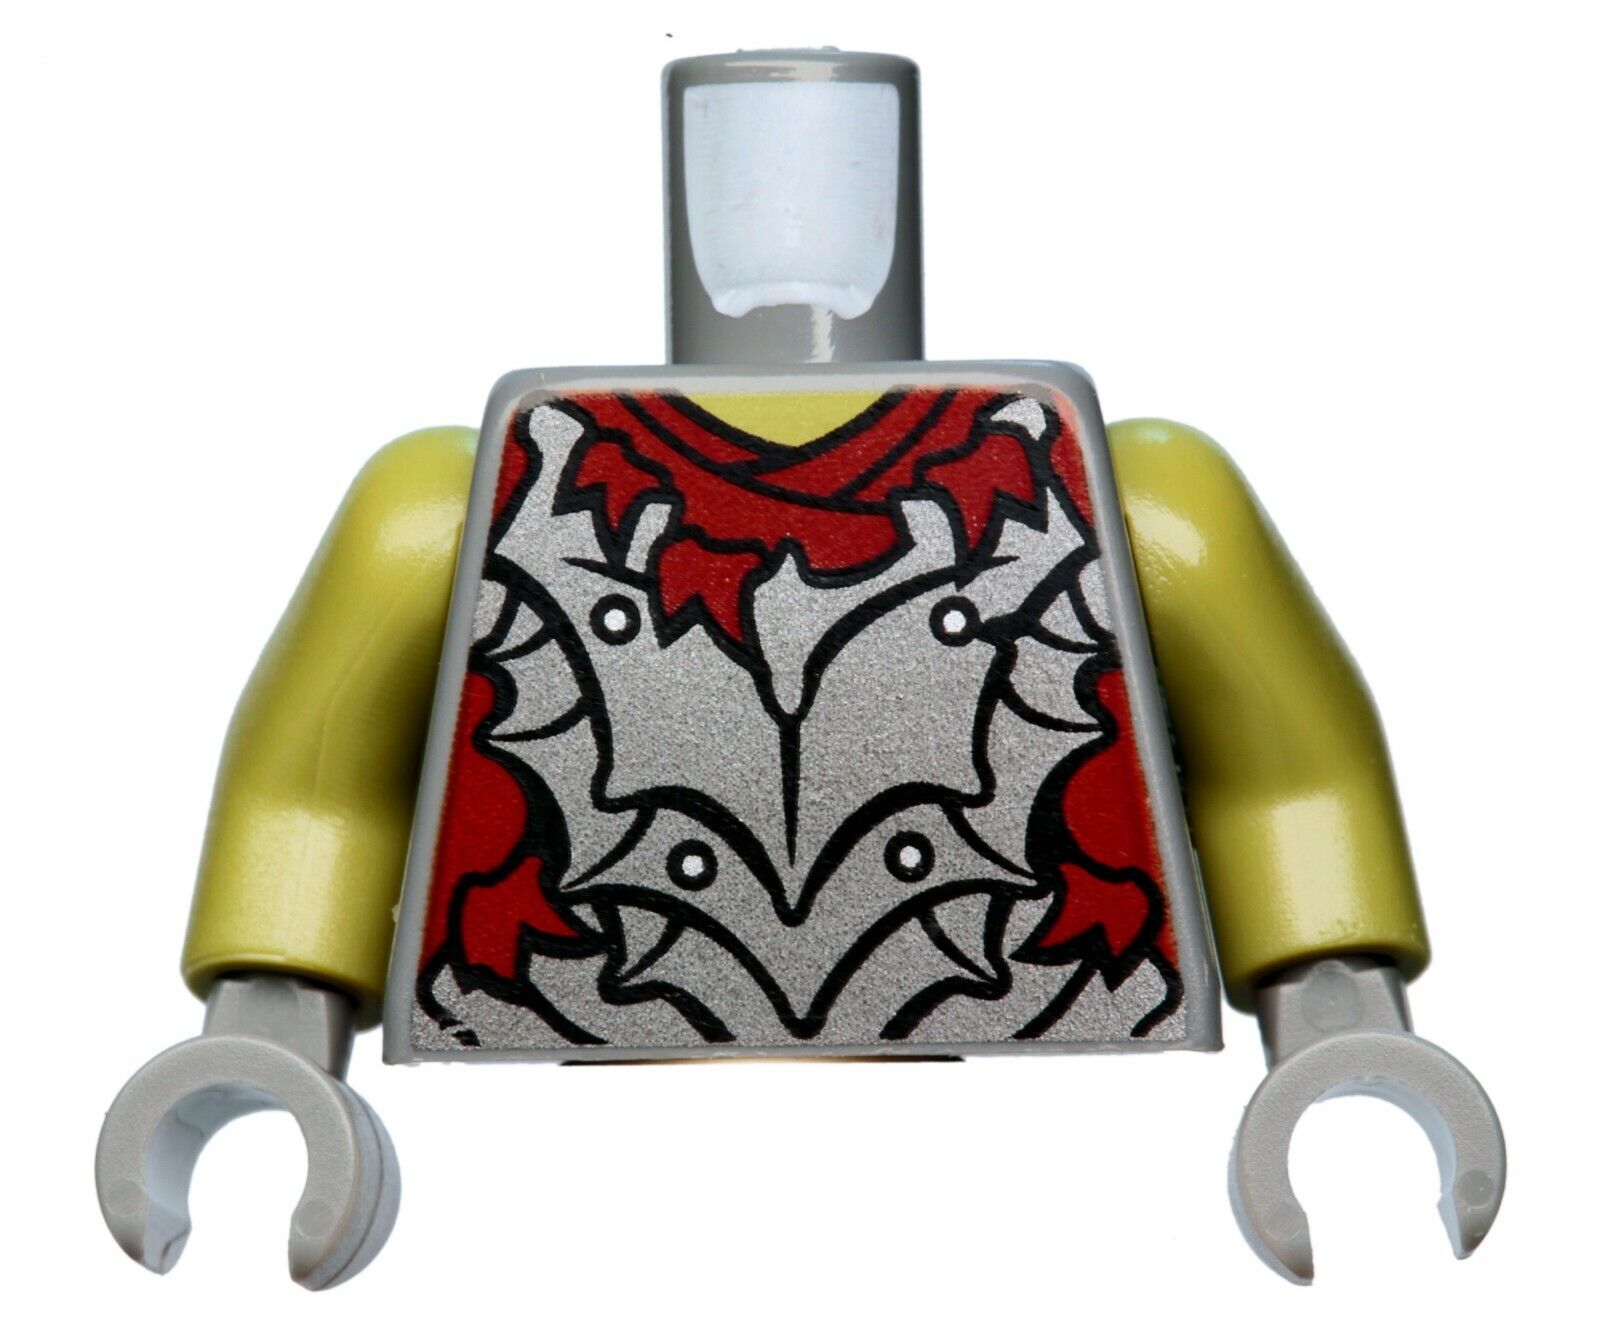 NEW LEGO - Torso - LotR / The Hobbit - Moria Orc - 9473 The Mines of Moria